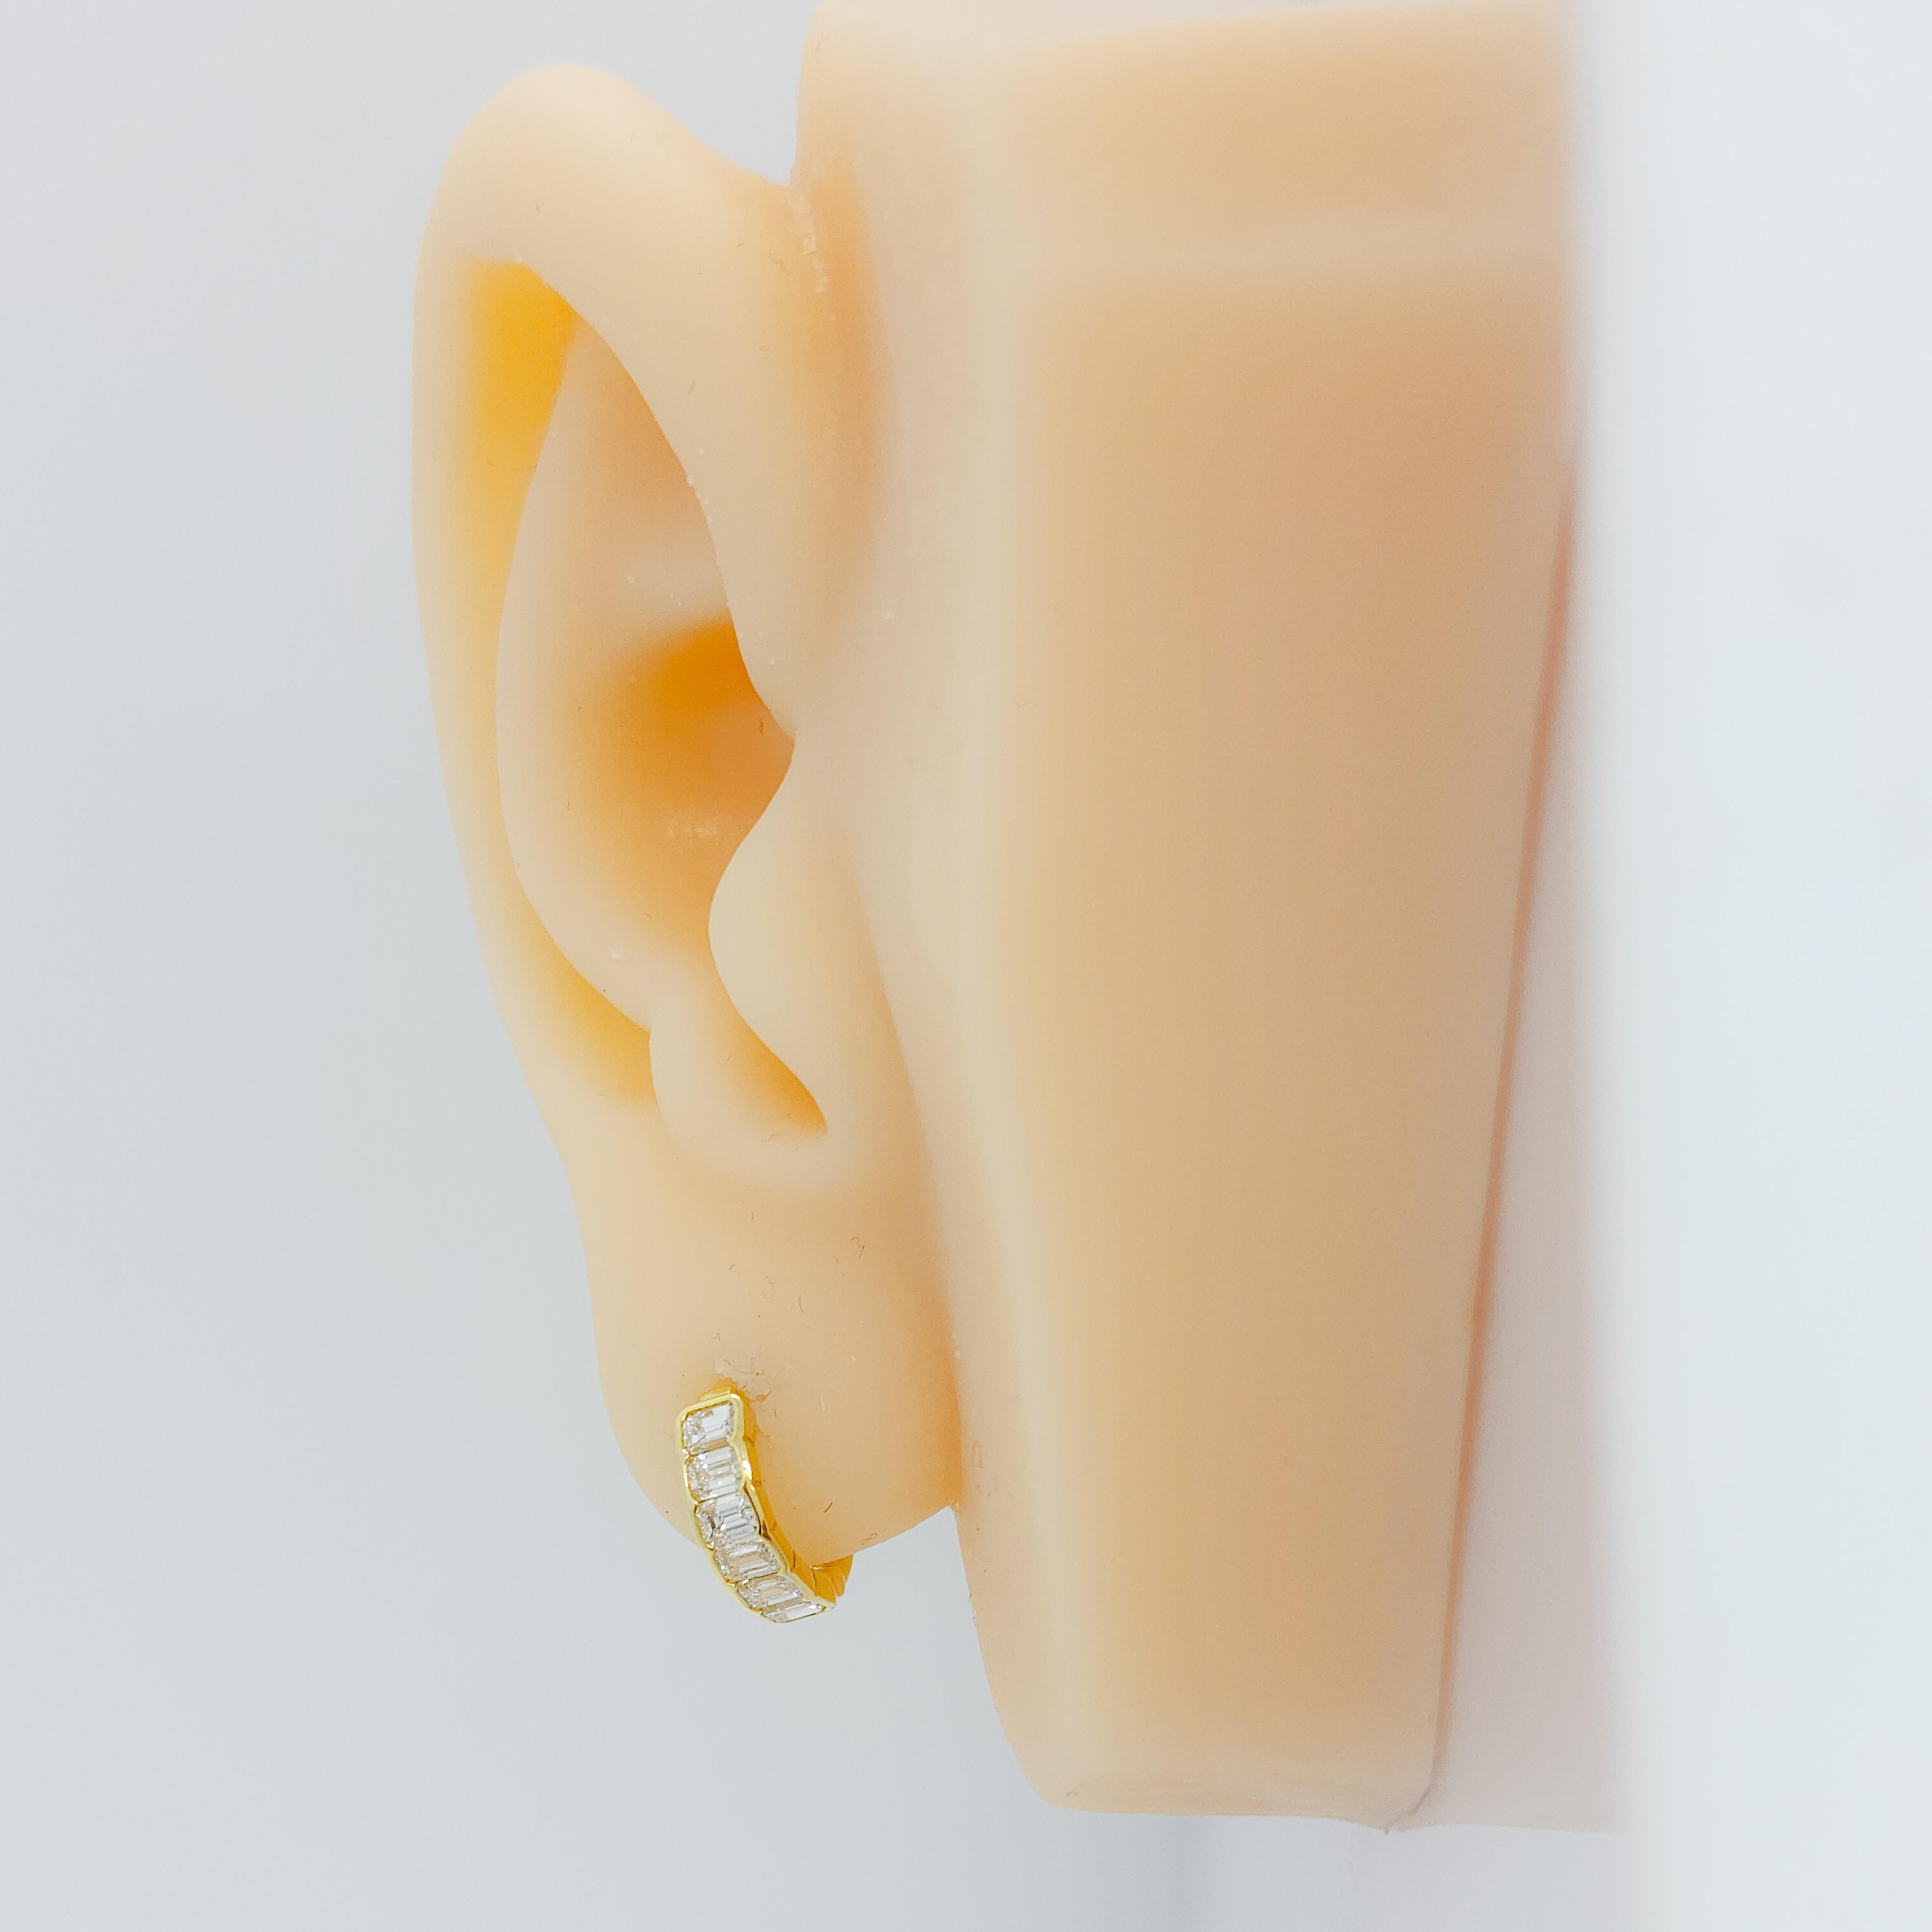 Schöne 0,97 ct. weiß, hell, und gute Qualität Diamant Smaragd geschnitten.  Handgefertigt in 18k Gelbgold.  Diese Ohrringe sind vielseitig, leicht zu tragen und sehen schick aus.  Auch in 18 Karat Weißgold erhältlich.